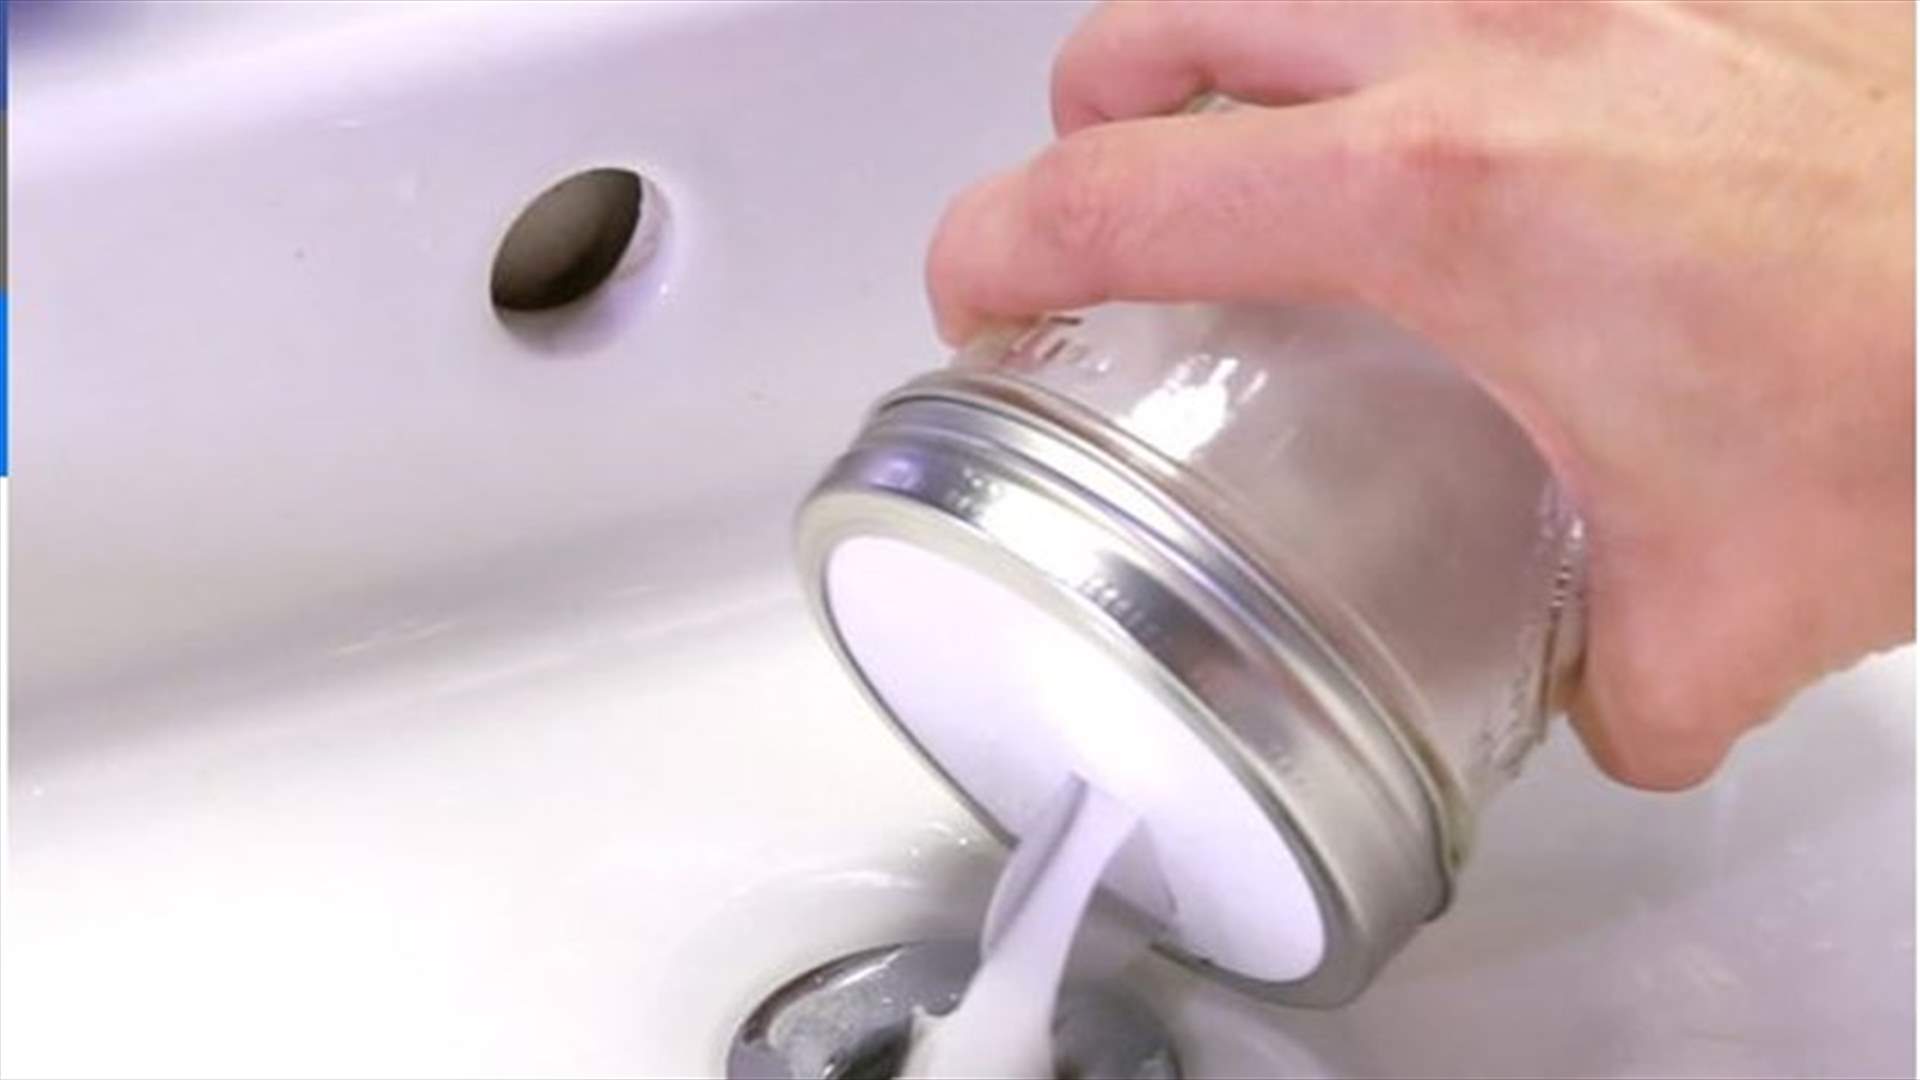 بالفيديو: طريقة مضمونة لتنظيف مجاري مغسلة اليدين!